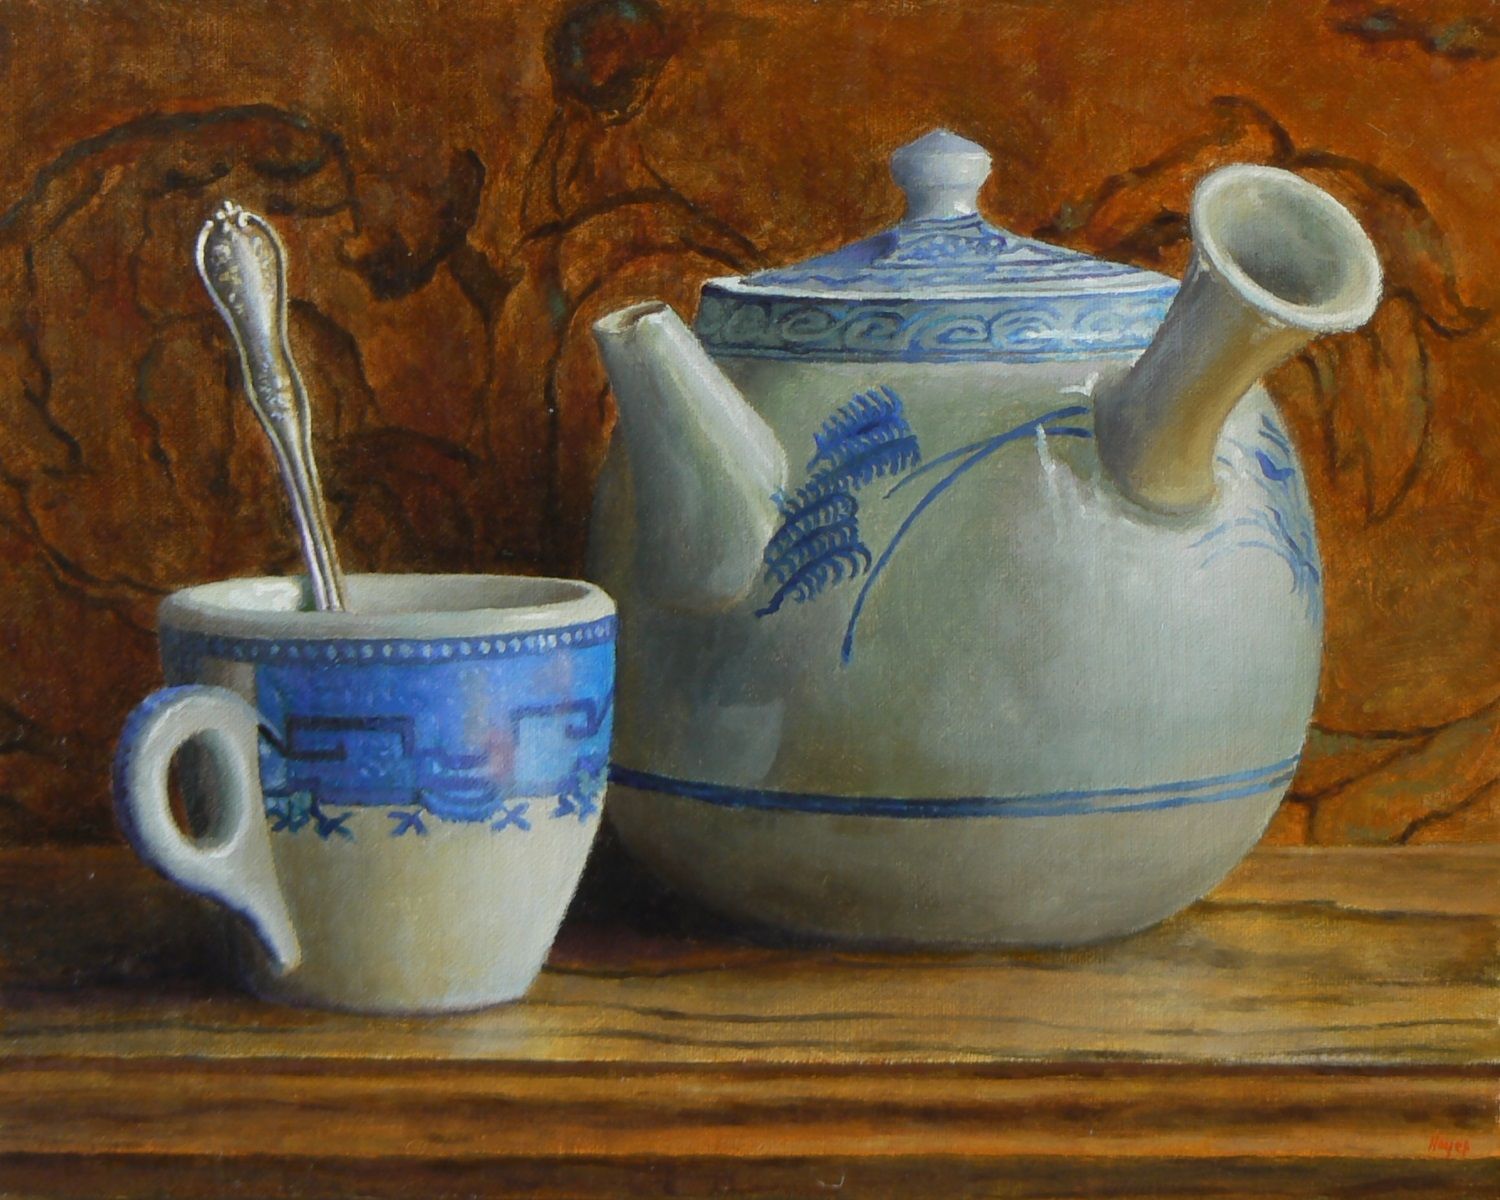 Kyusu Teapot and Teacup